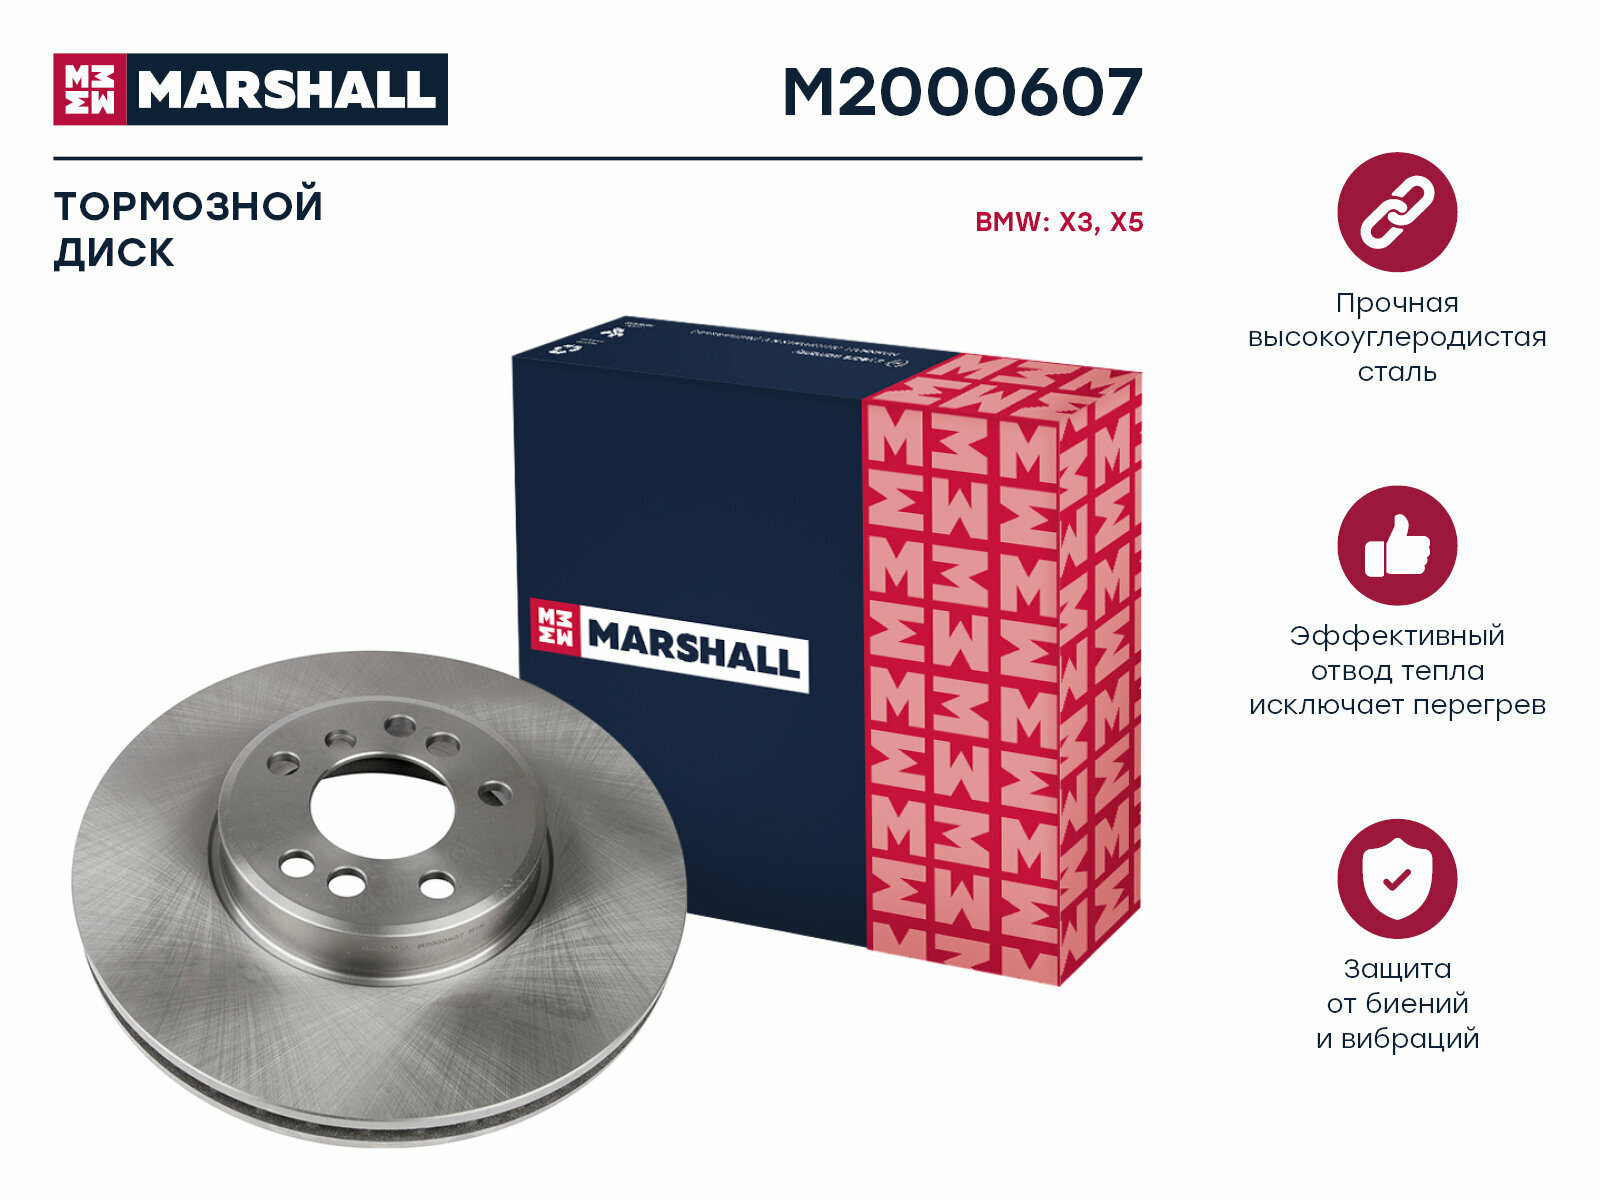 Тормозной диск передний MARSHALL M2000607 для BMW X3 (E83) 06- BMW X5 (E53) 00- // кросс-номер TRW DF4187S